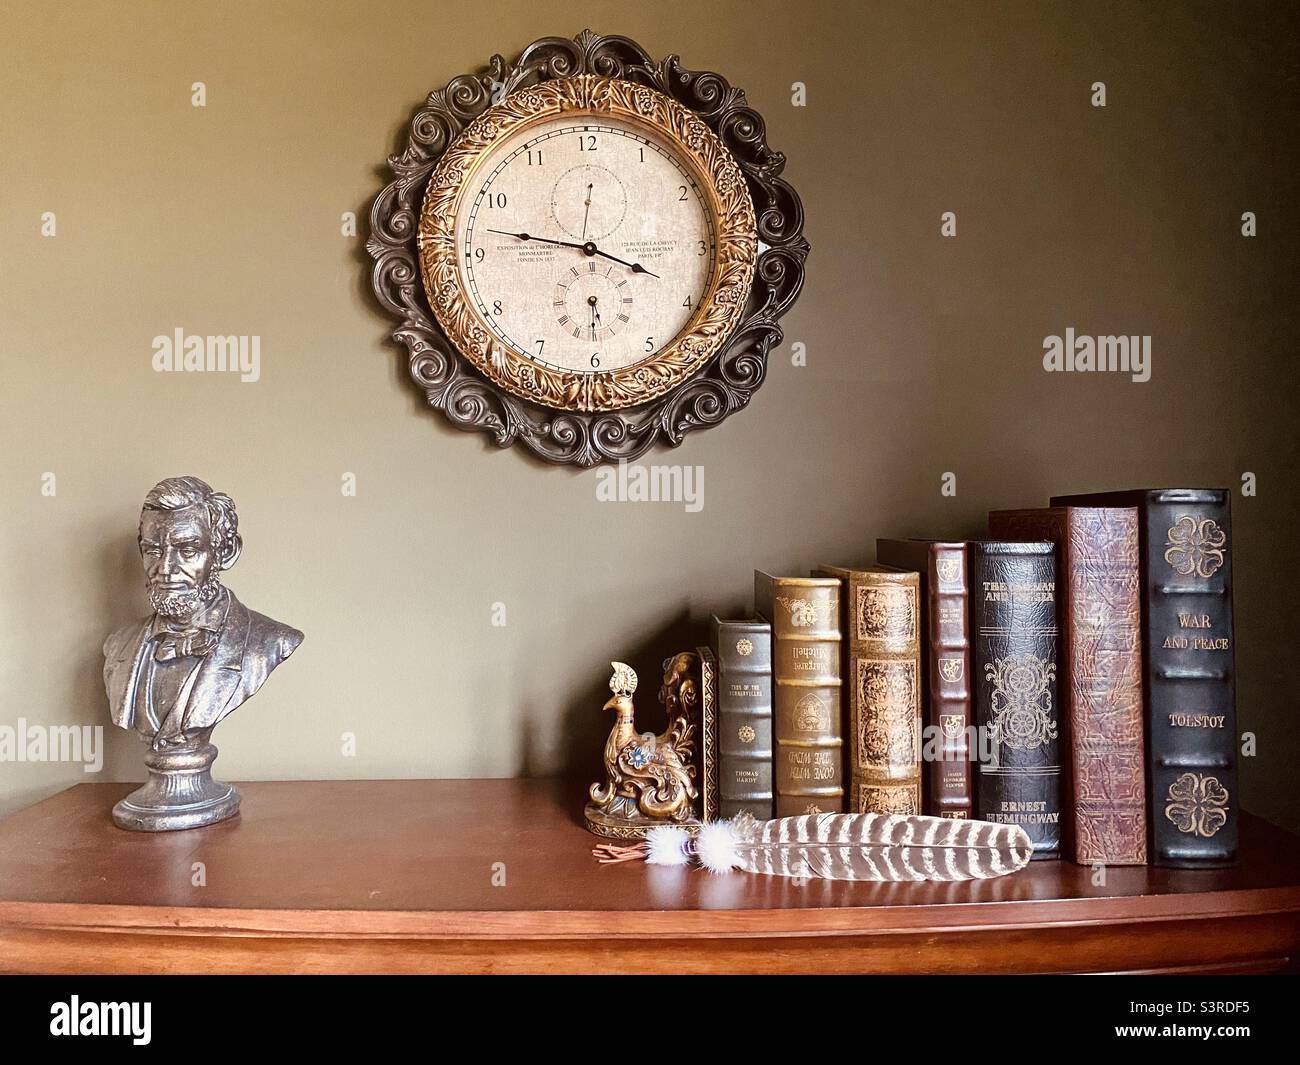 Colección de libros de época con un extremo de libro antiguo en forma de pavo real; un reloj antiguo, una estatua de Lincoln y una pluma de águila. Foto de stock